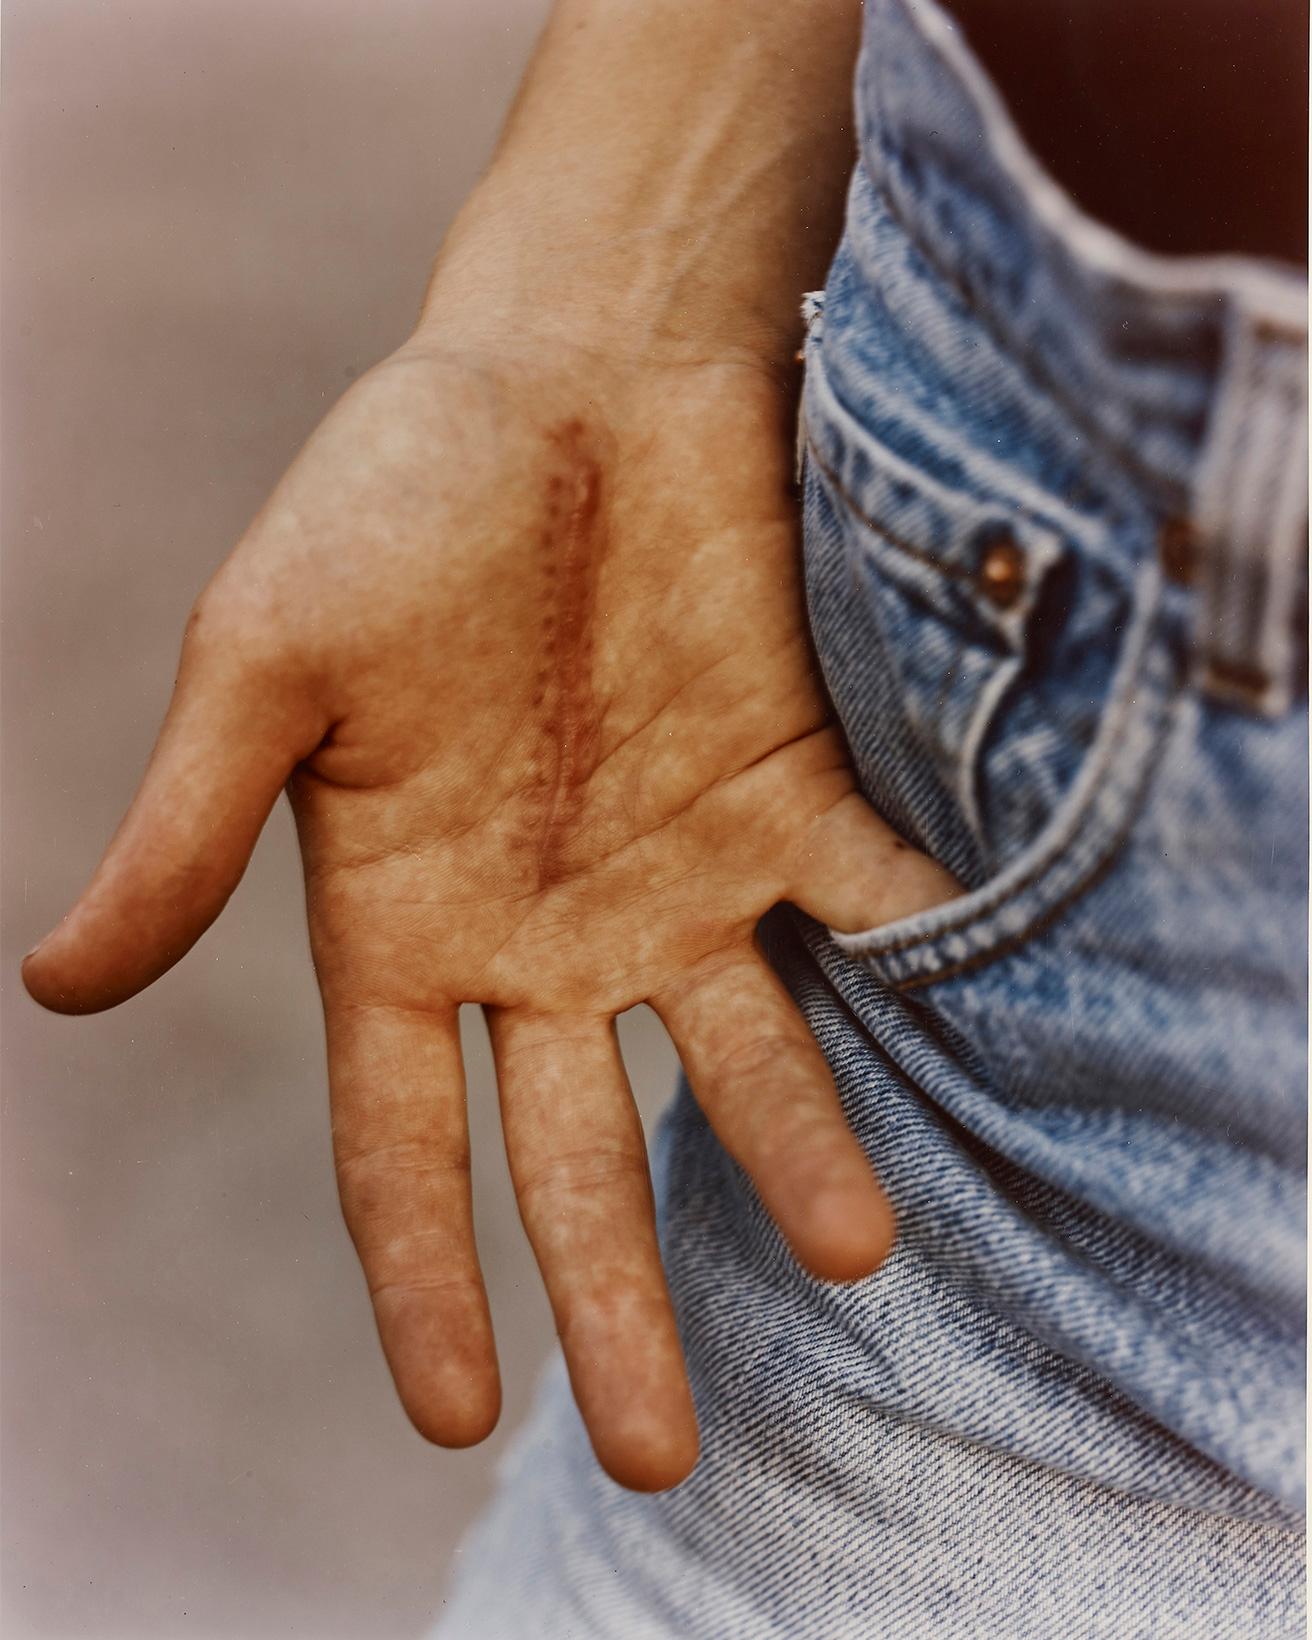 キャリア初期に発表された作品より。『Jean’s hand,NYC』(1992) C-print 610×508mm